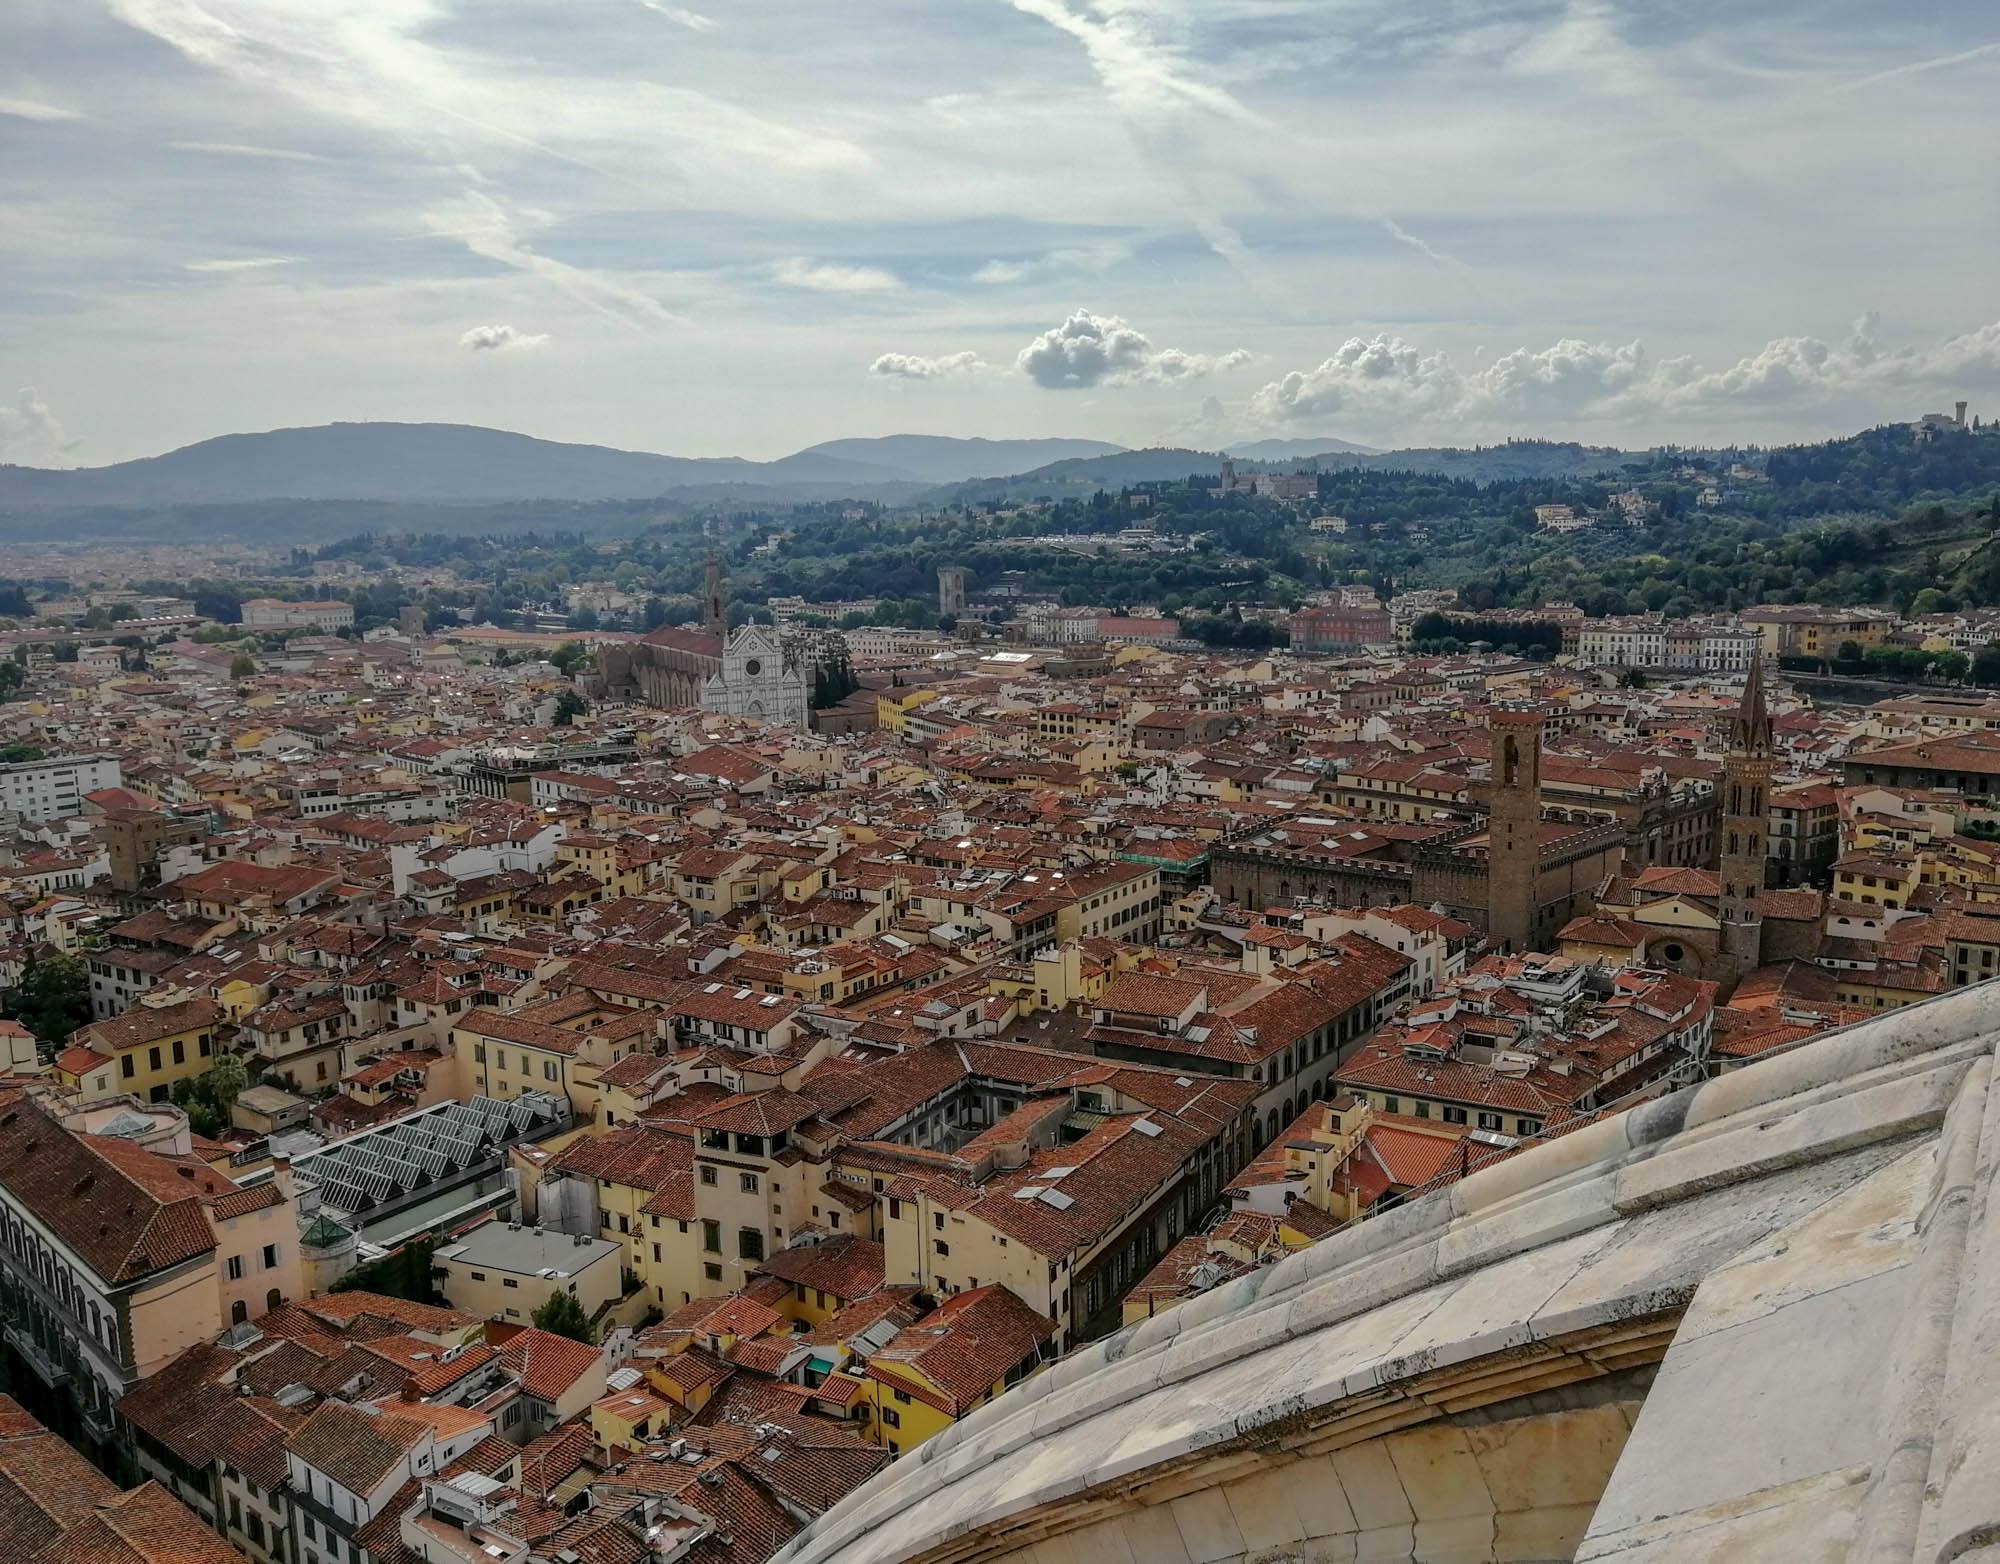 Dóm tetejéről, Firenze